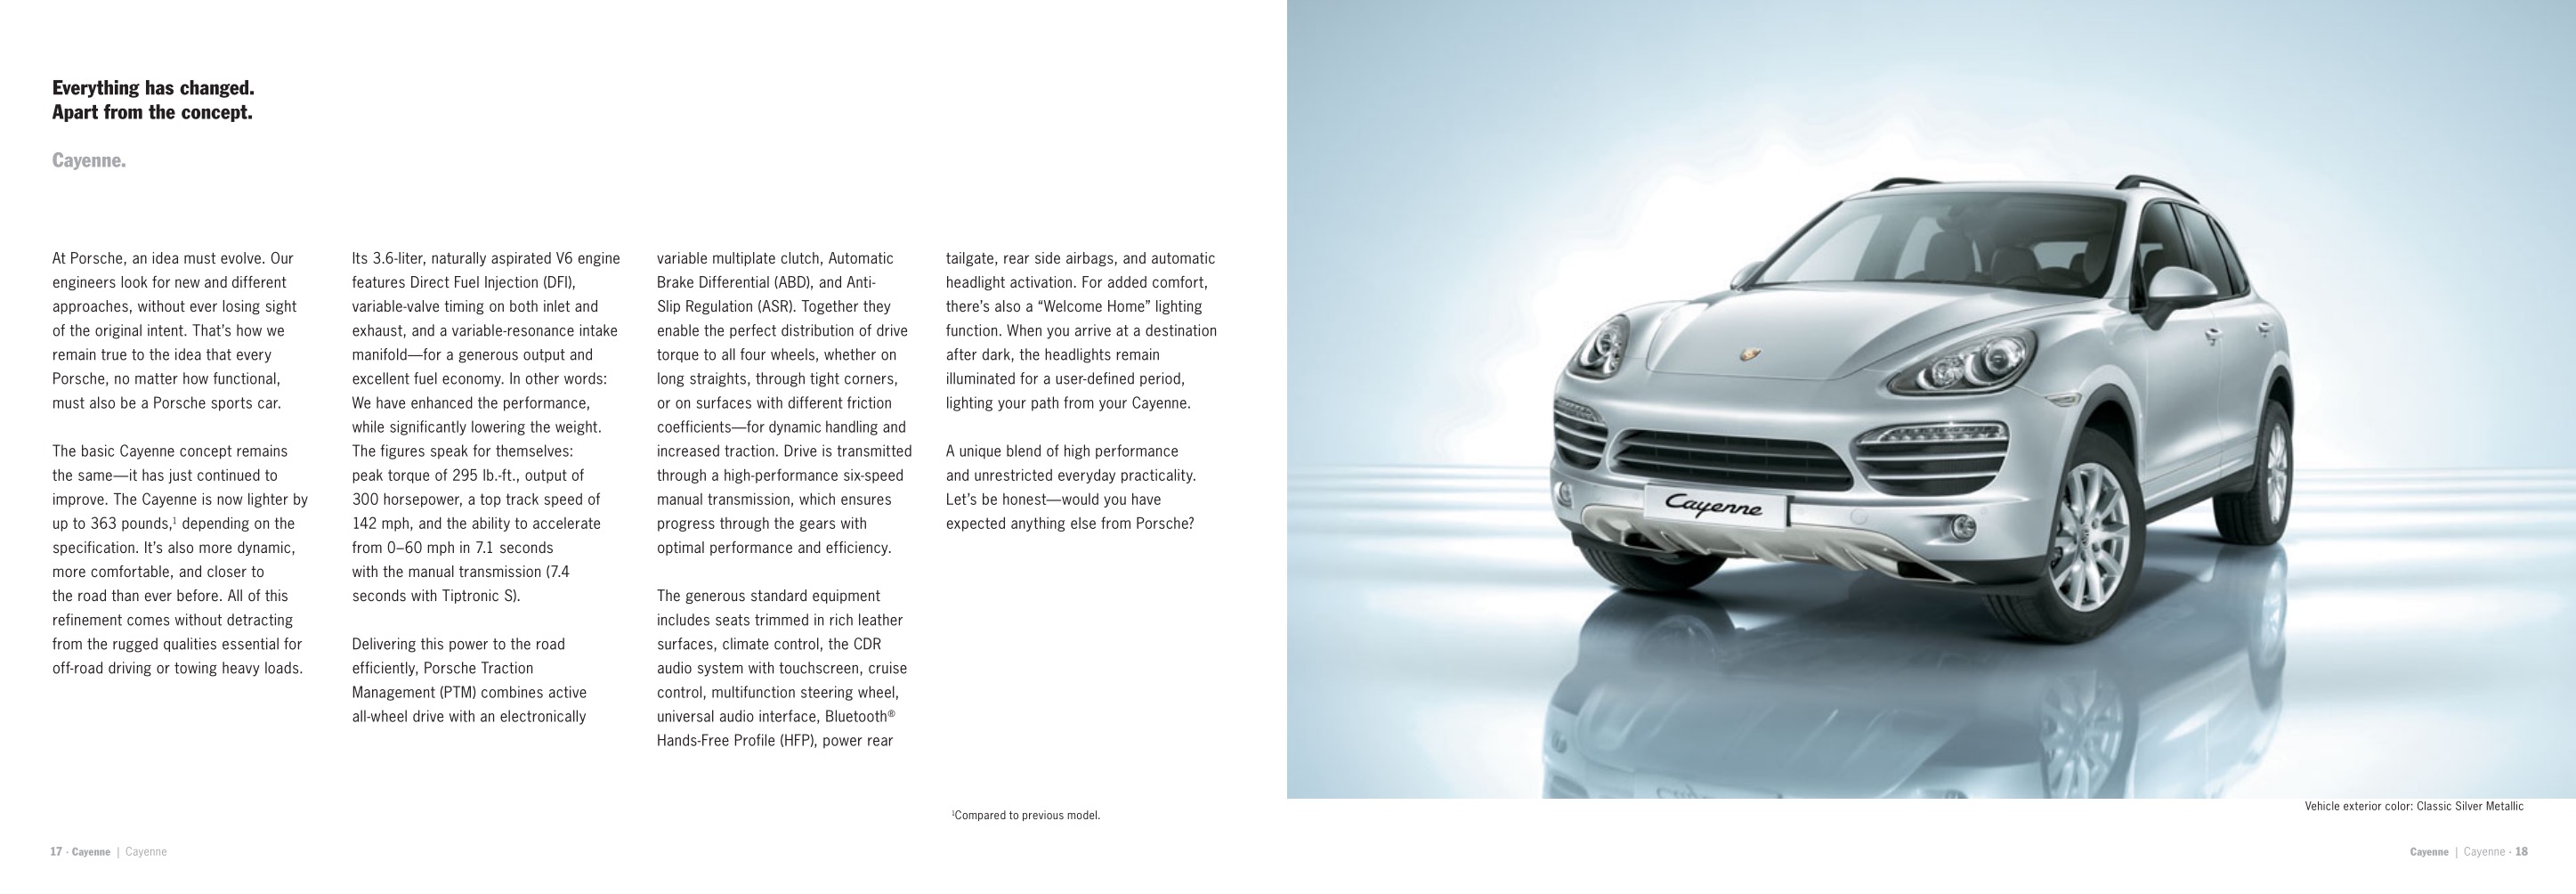 2013 Porsche Cayenne Brochure Page 4